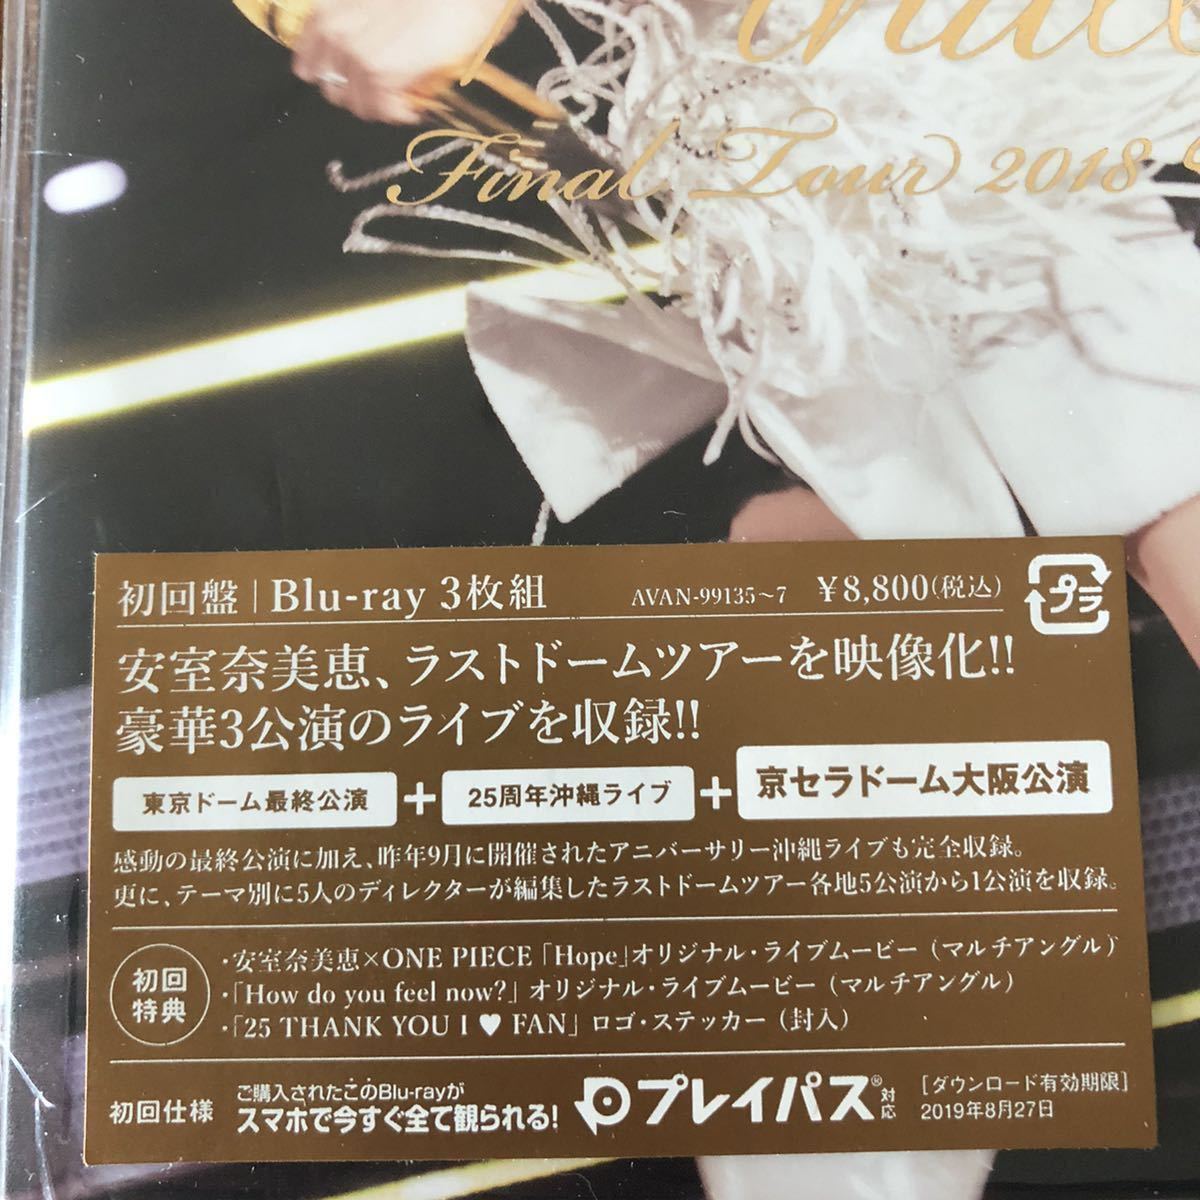  новый товар нераспечатанный * Amuro Namie namie amuro Final Tour 2018 ~Finally~ первое издание 3 листов комплект Blue-ray Blu-ray/ Osaka Dome * дополнение 